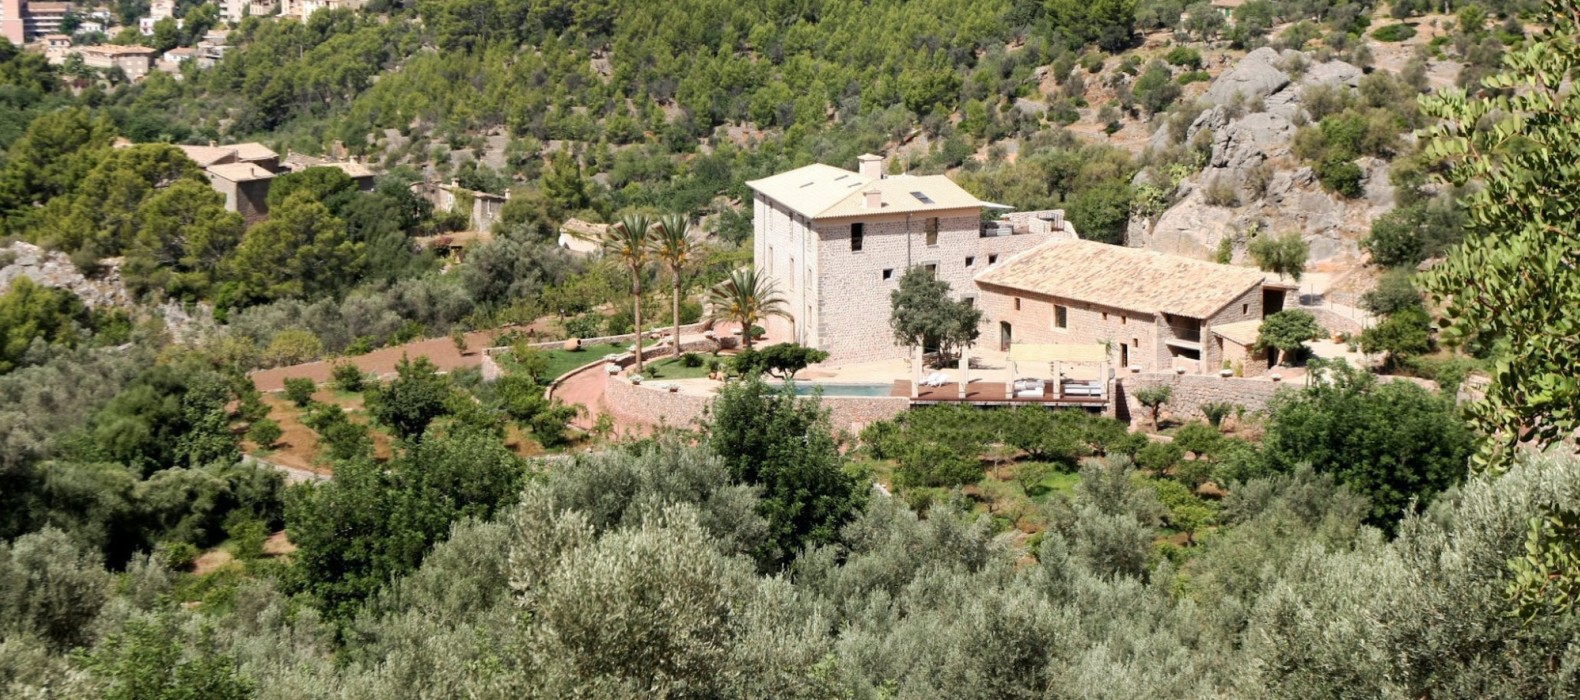 Nature around the villa of Casa de la Palma in Mallorca